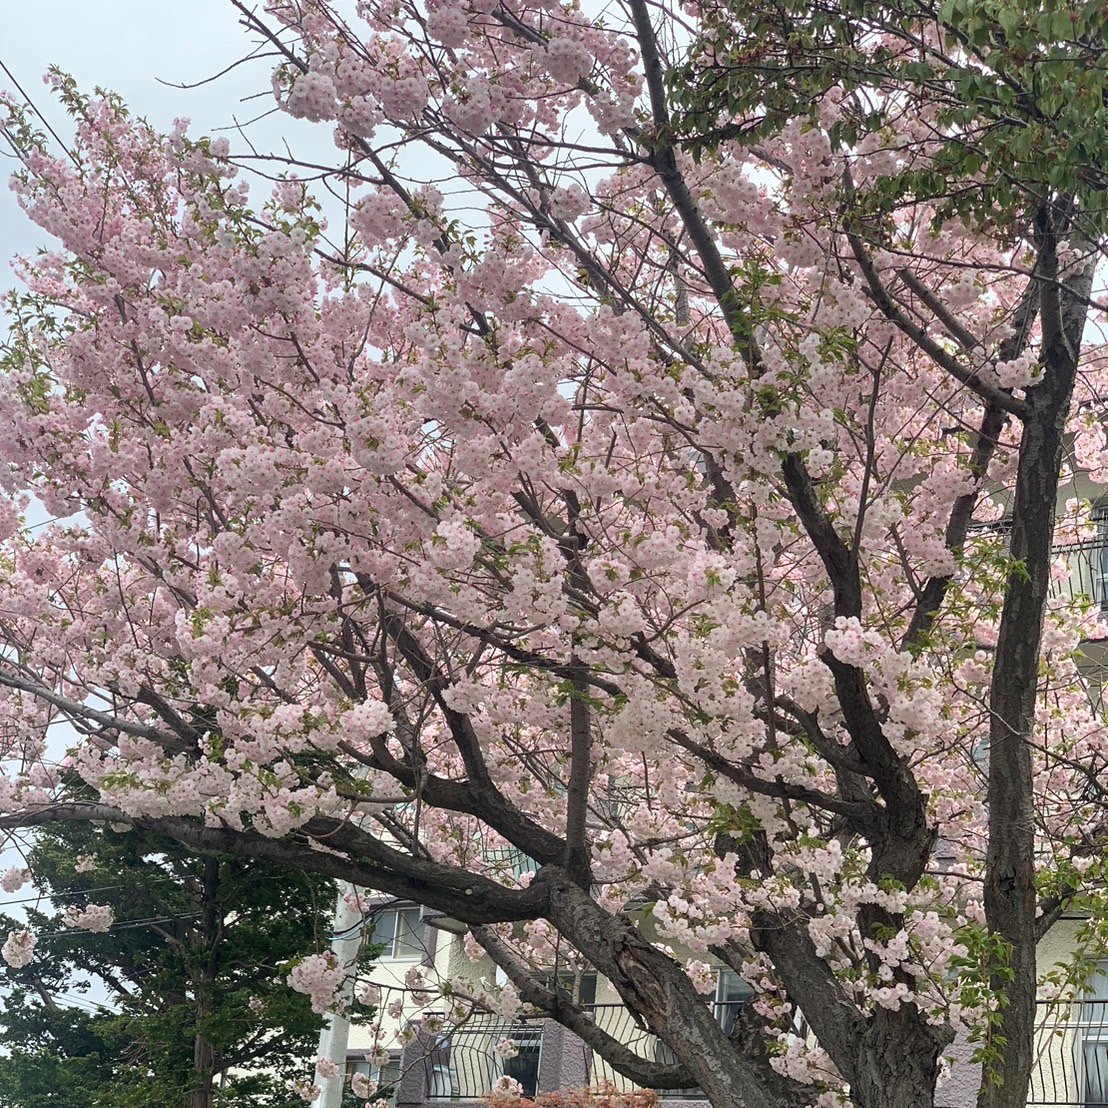 札幌は八重桜が満開です。

もう少し桜が楽しめそうです(*'ω'*)

#札幌
#桜
#企業公式相互フォロー